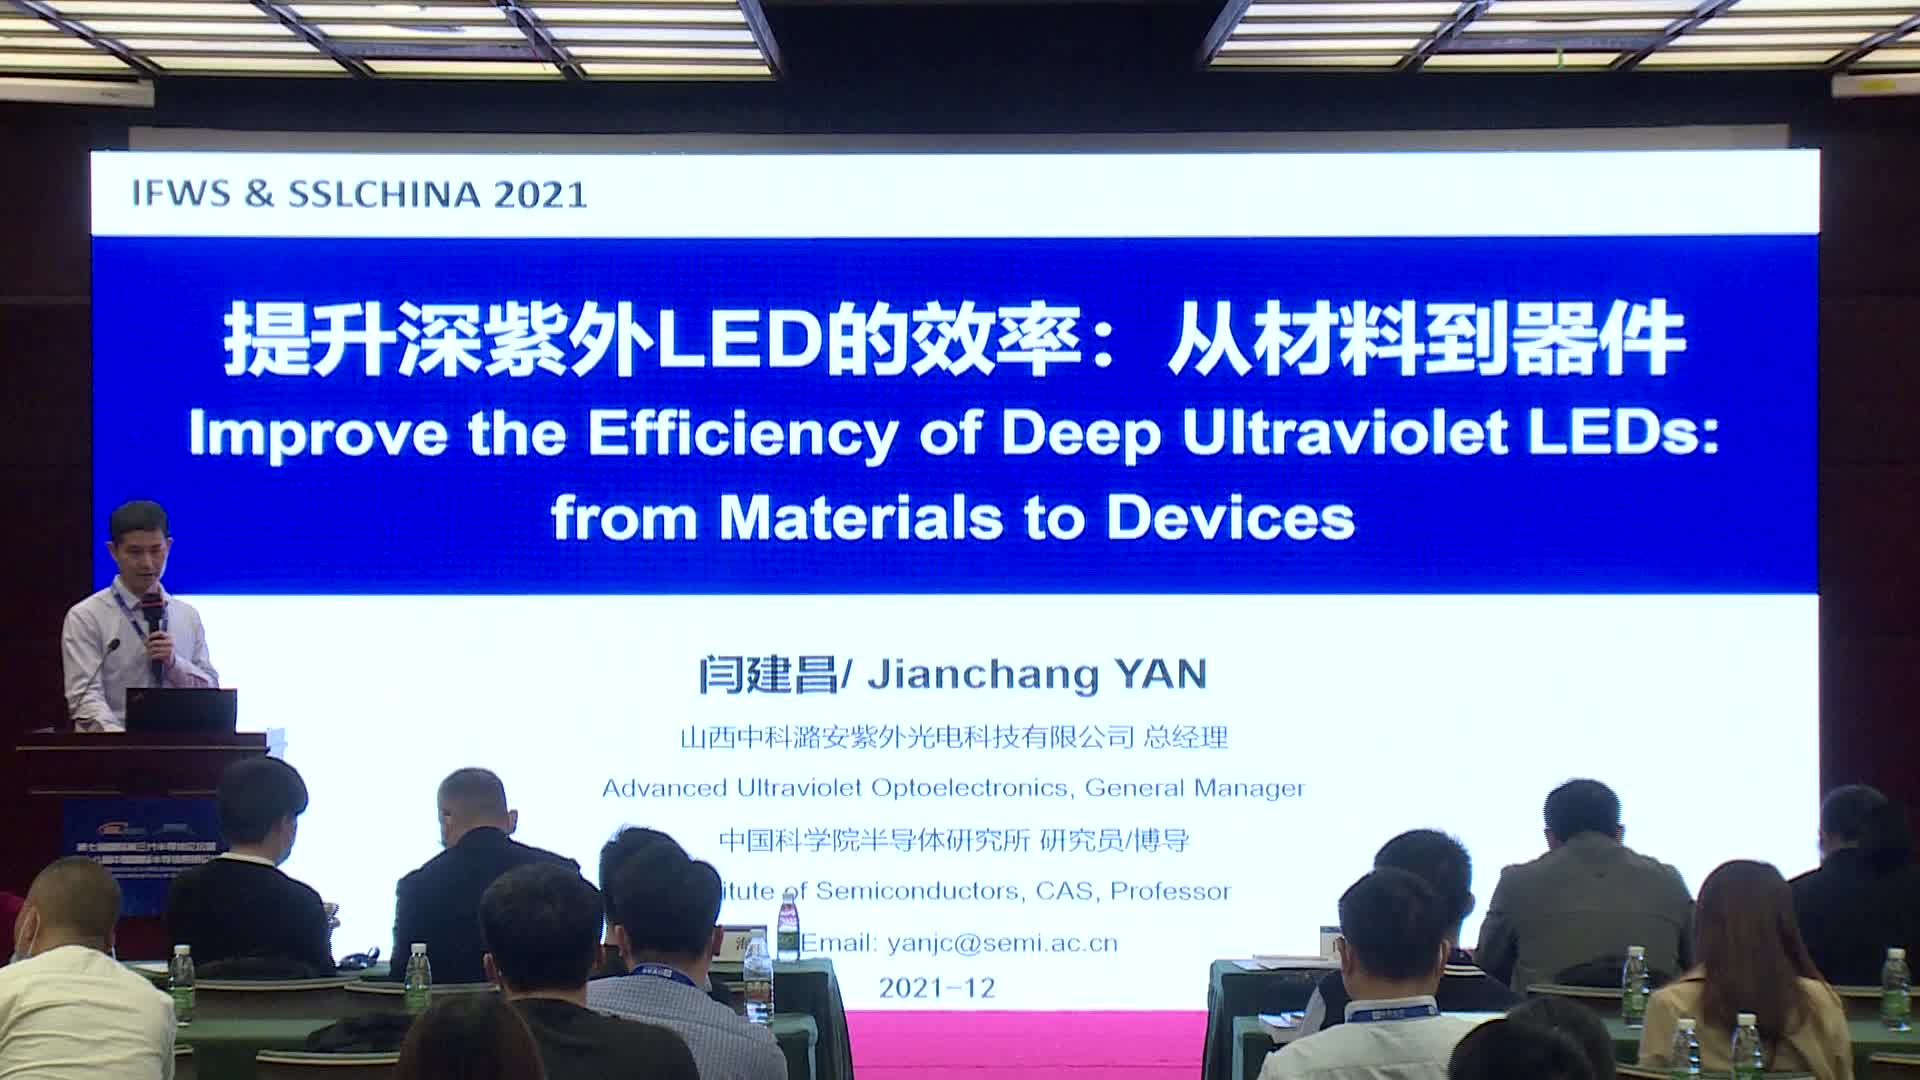 中科潞安总经理闫建昌：提升深紫外LED的效率：从材料到器件